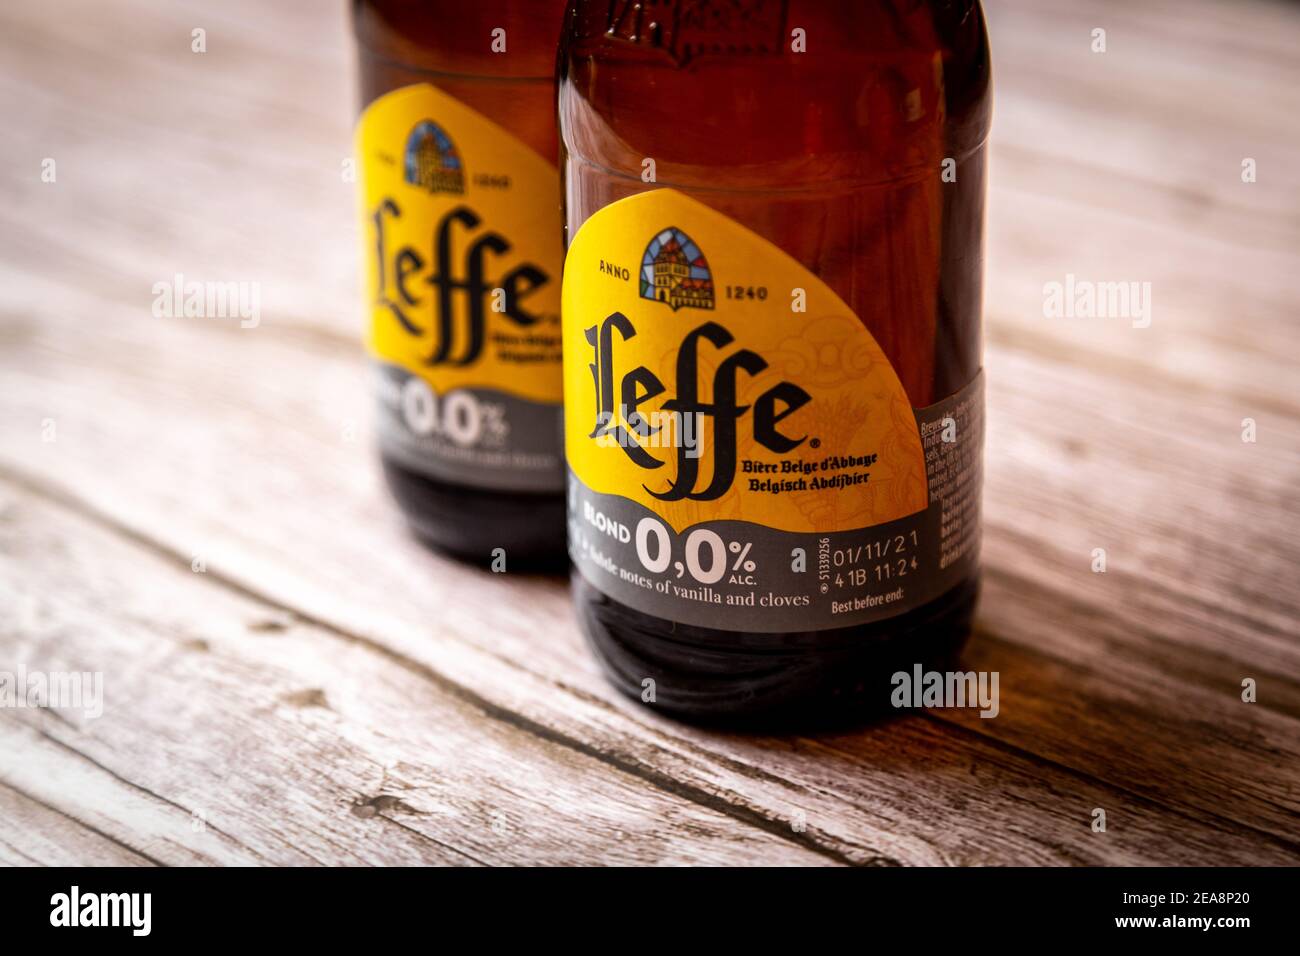 Gros plan sur les étiquettes des bouteilles de bière Leffe Zero alcool, boissons sans alcool Banque D'Images